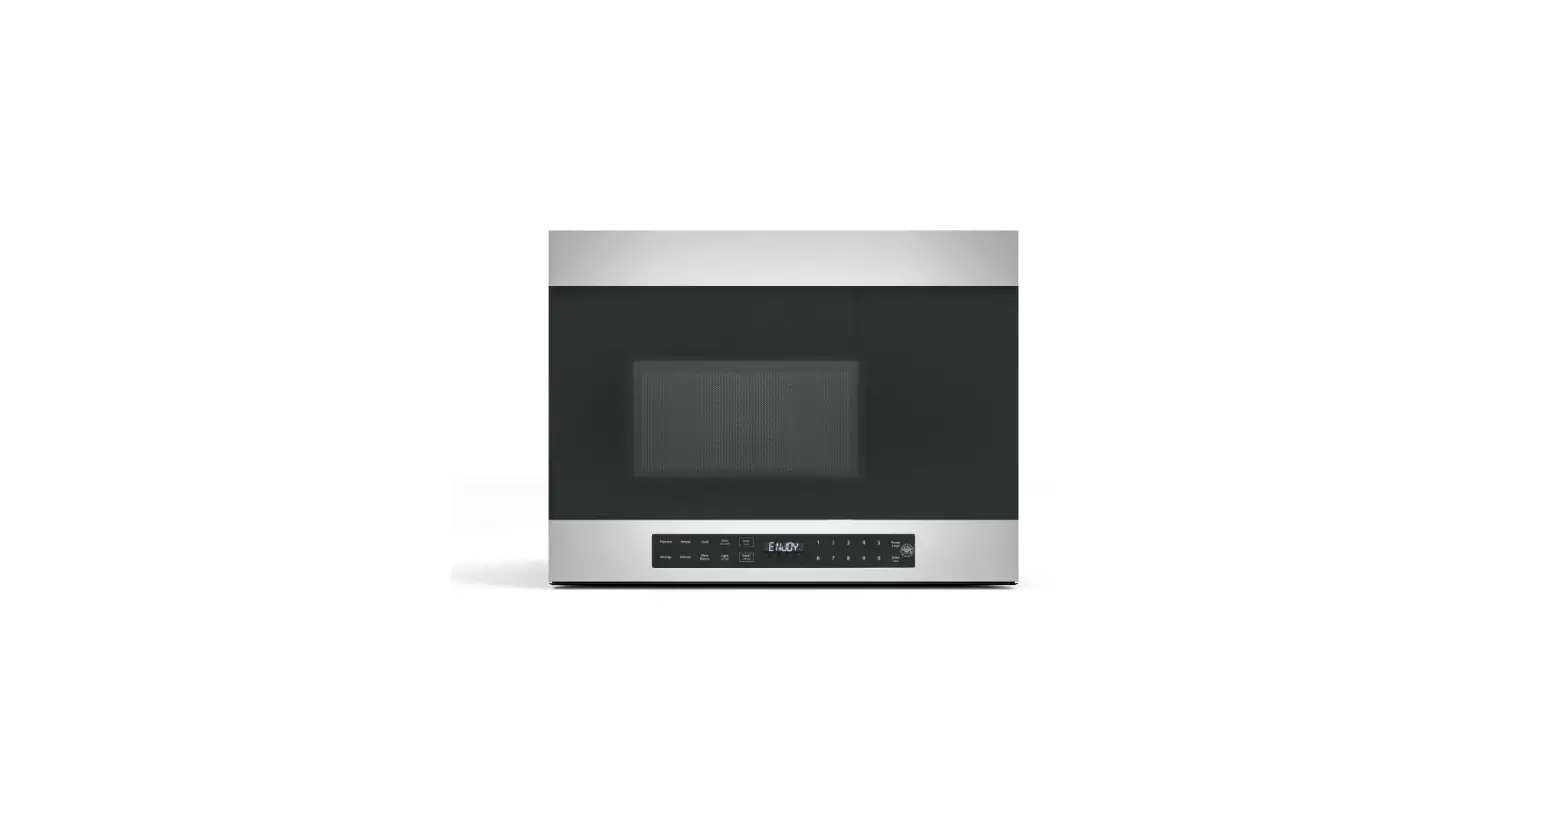 BERTAZZONI KOTR24MXE 24 Inches Over the Range Microwave Oven 300 CFM User Manual